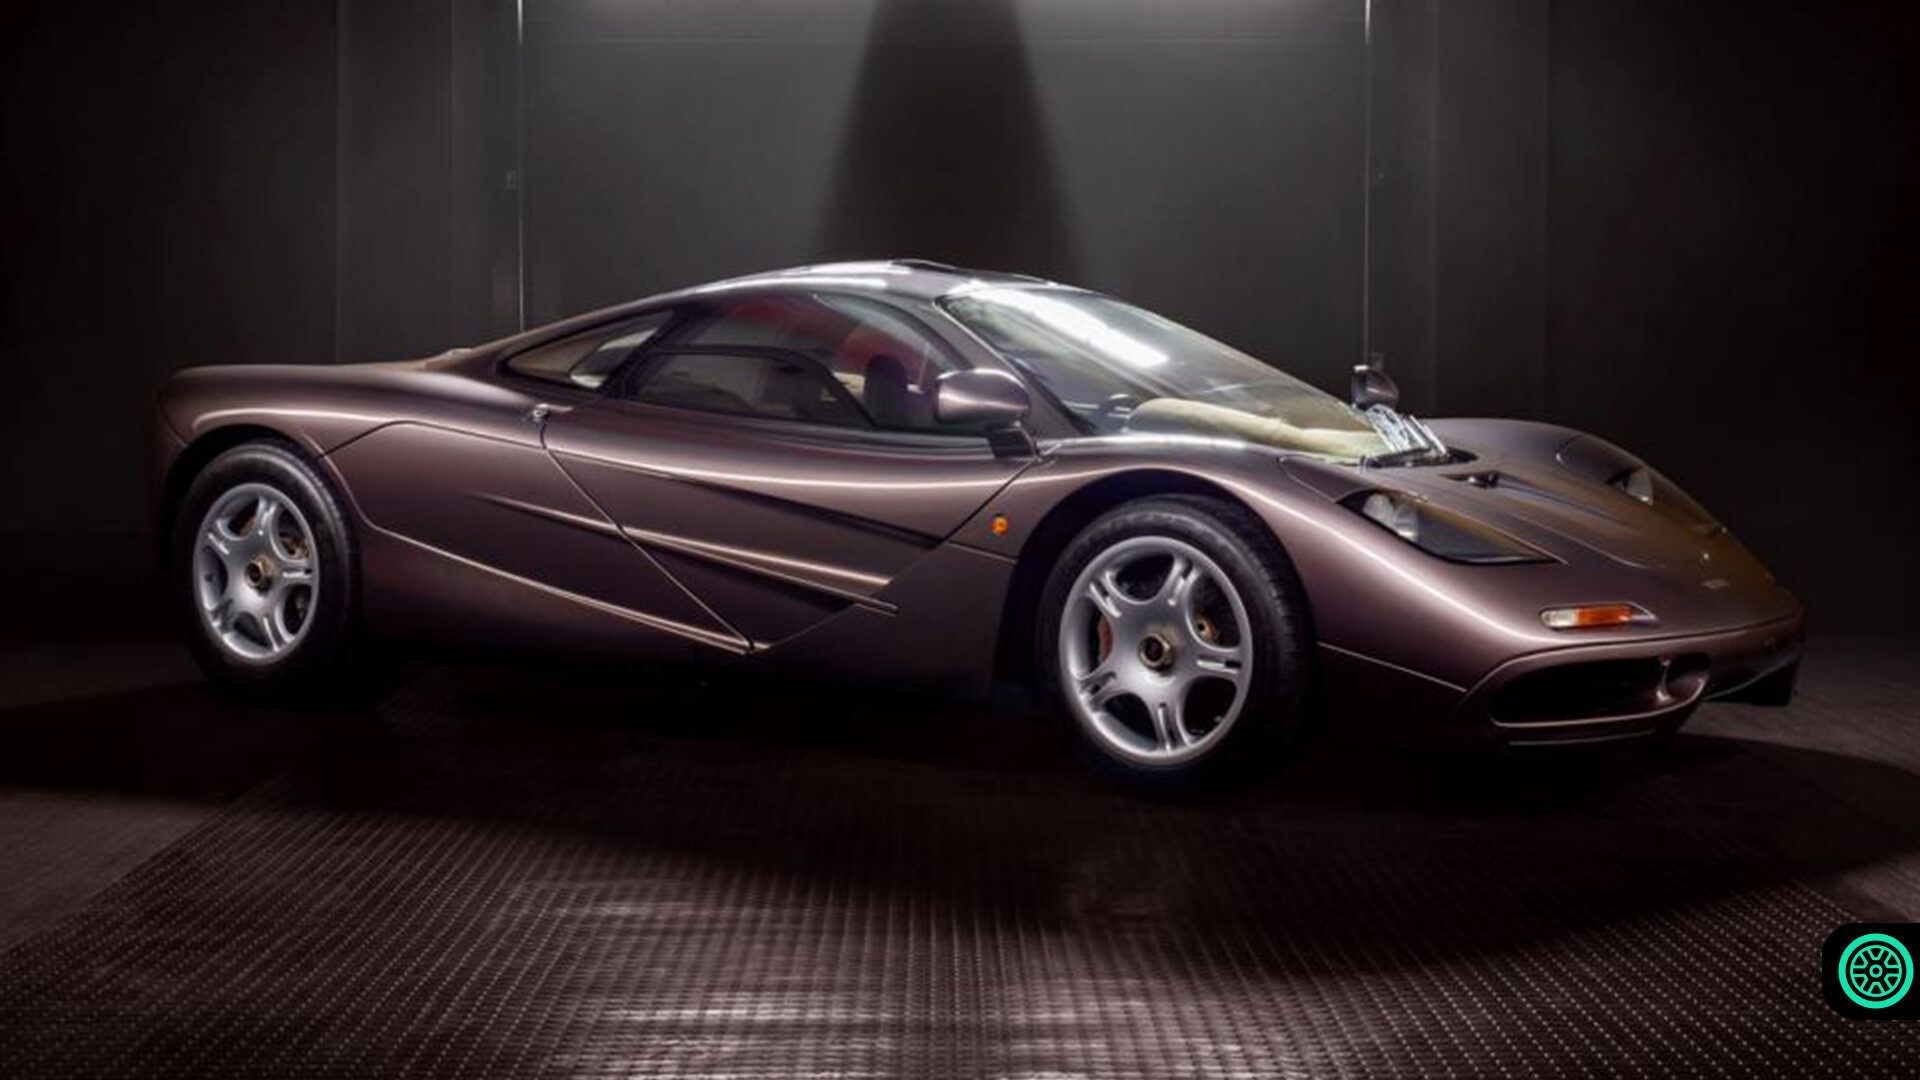 15 milyon dolarlık McLaren F1 modeli 400 km/s hıza ulaştı 20